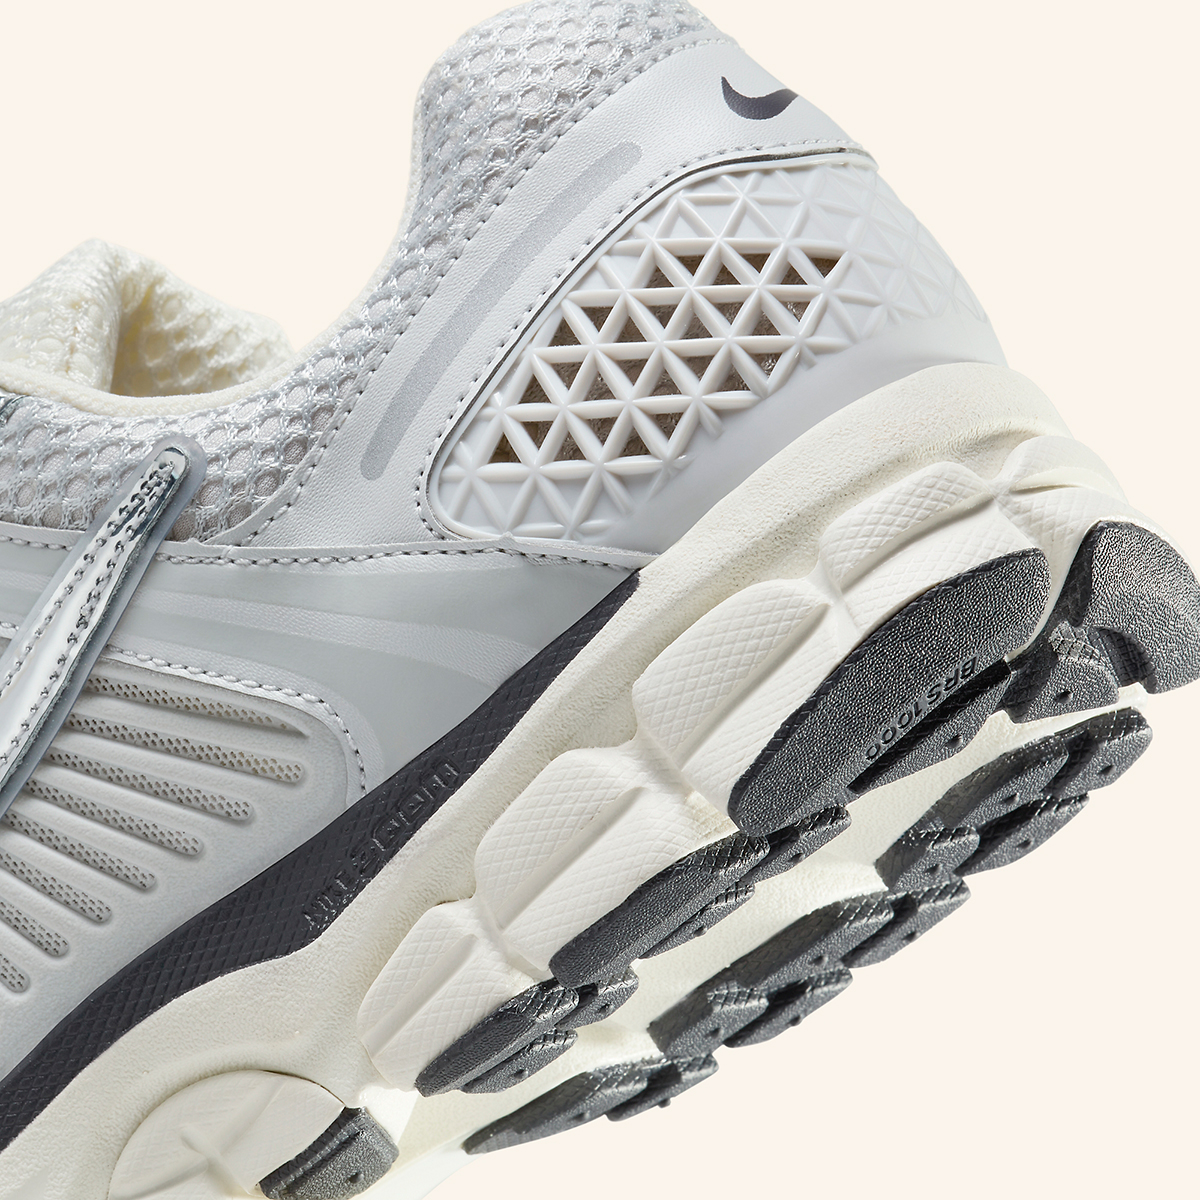 Nike Tall Tech fleece joggingbroek in grijs Summit White Metallic Silver Hj3758 001 5